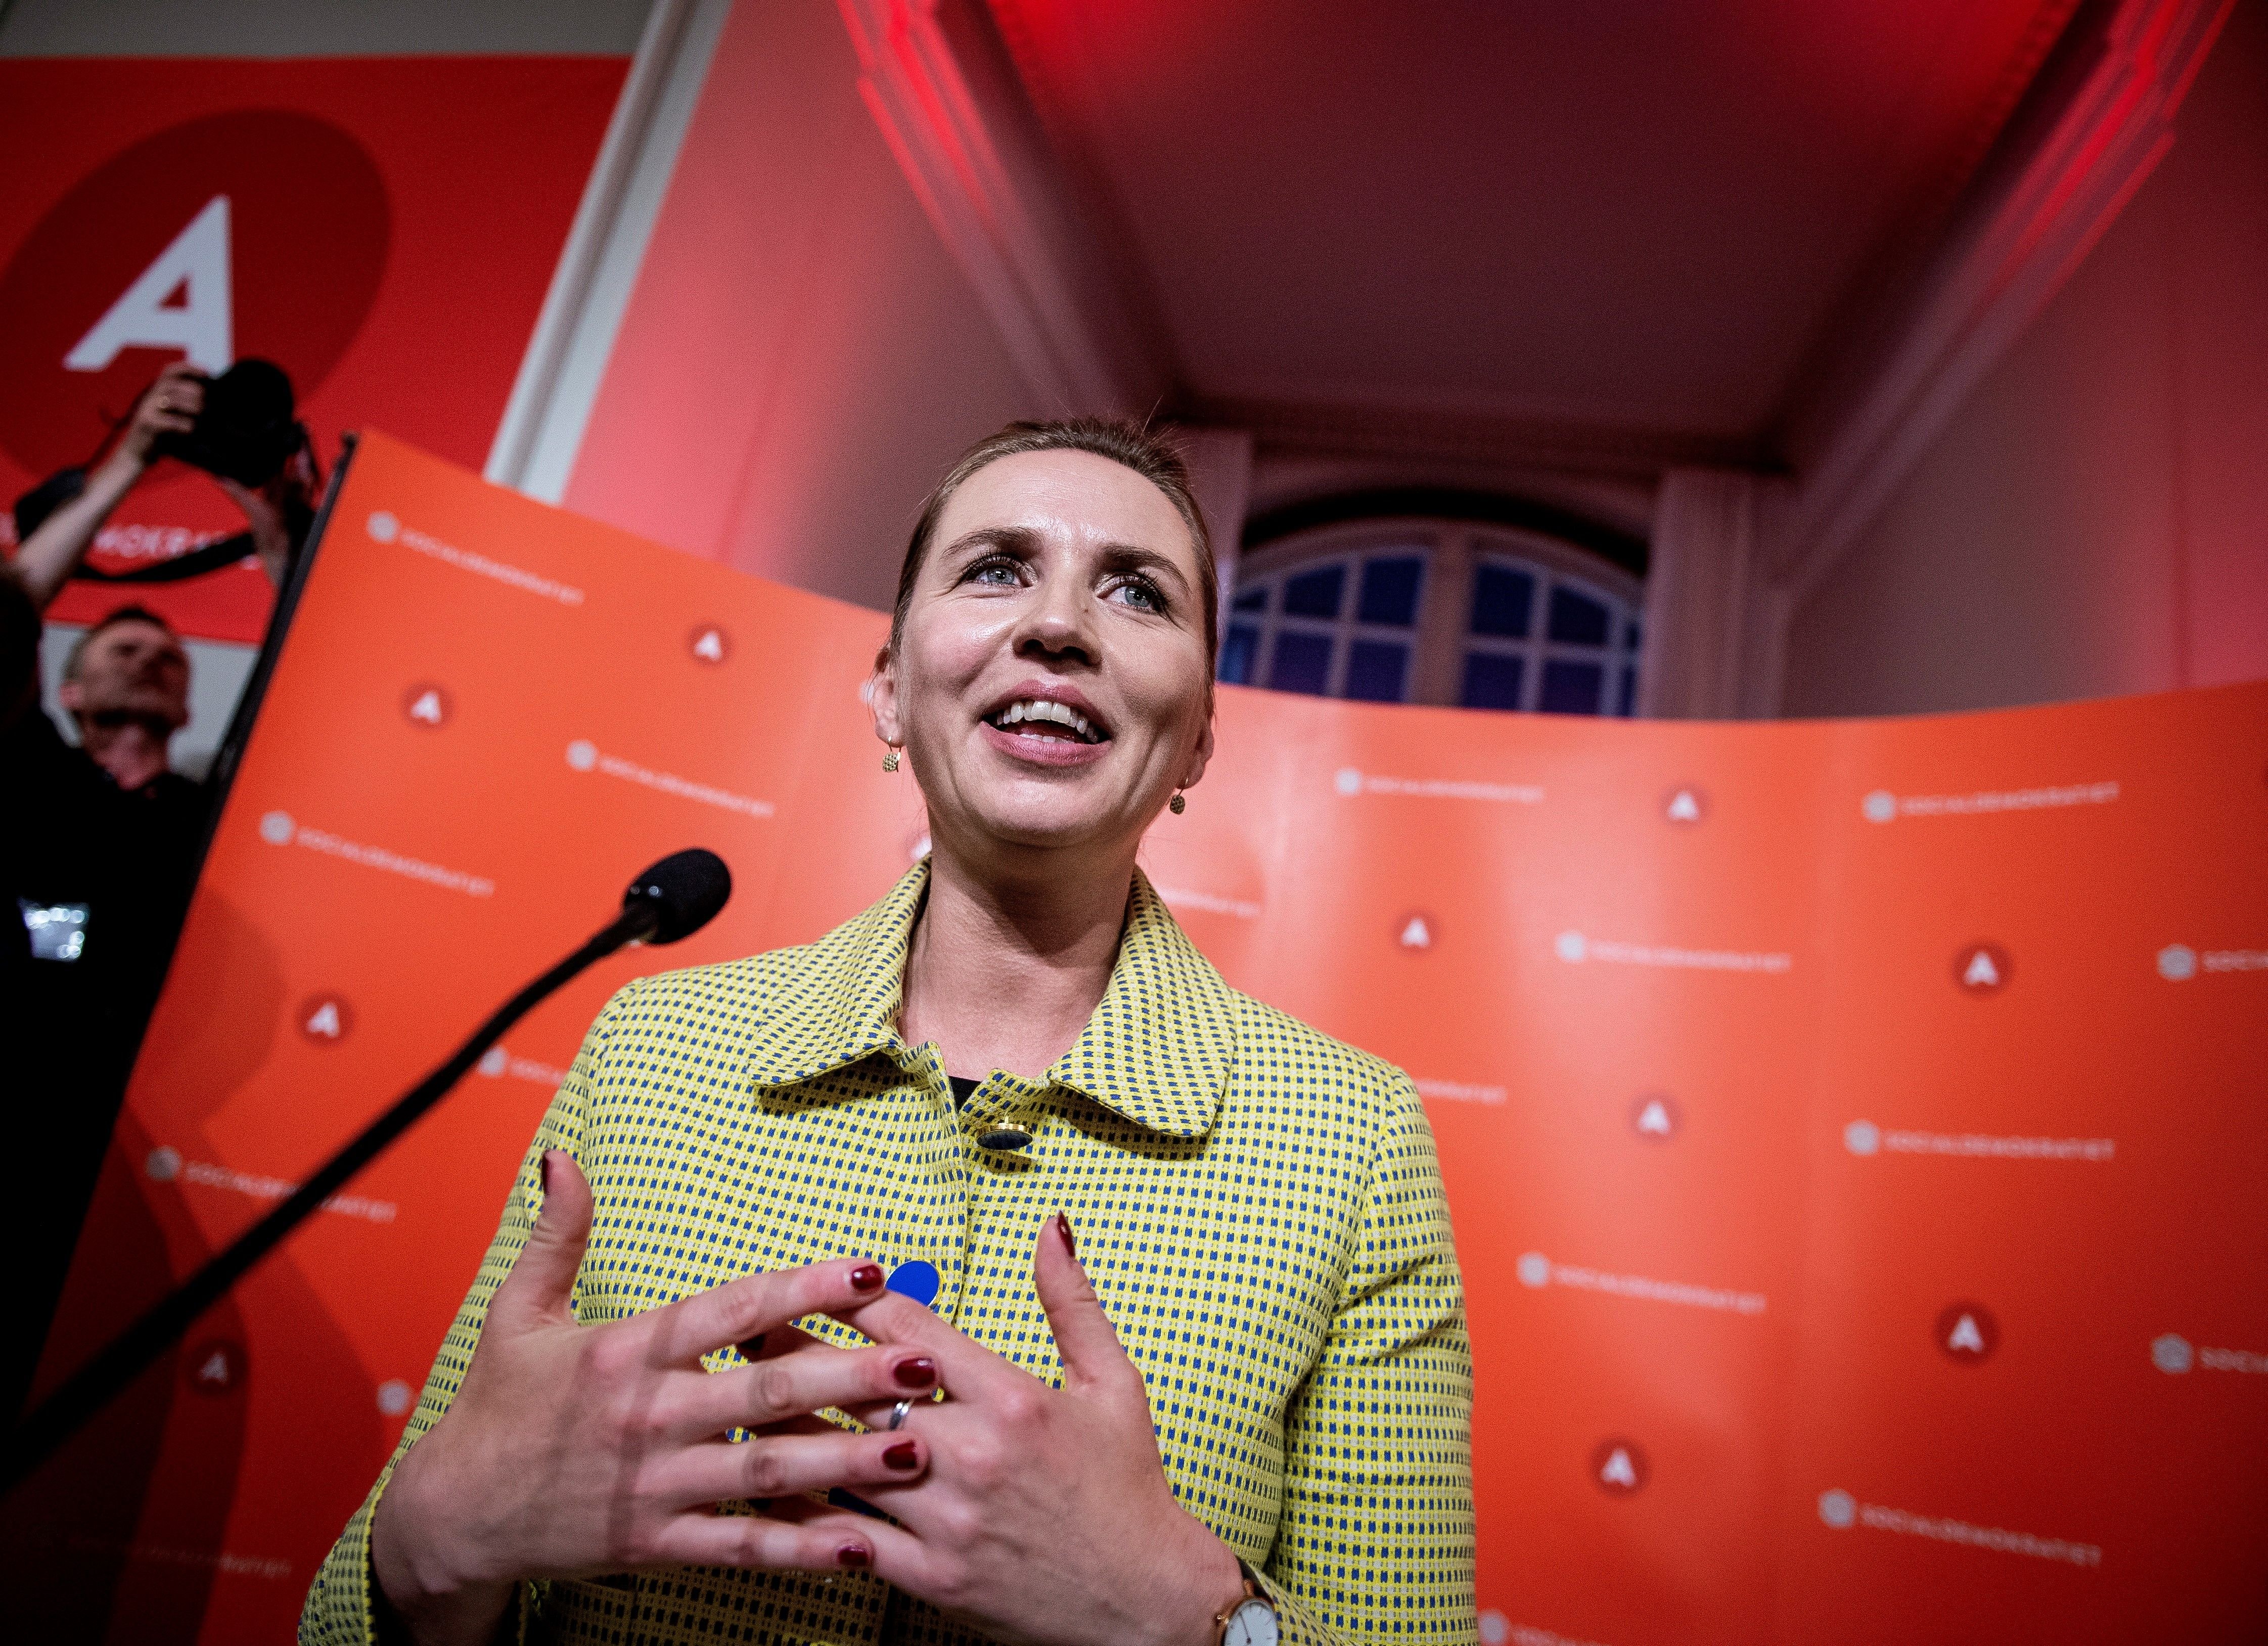 El centreesquerra recupera el poder a Dinamarca i la dreta xenòfoba s'enfonsa